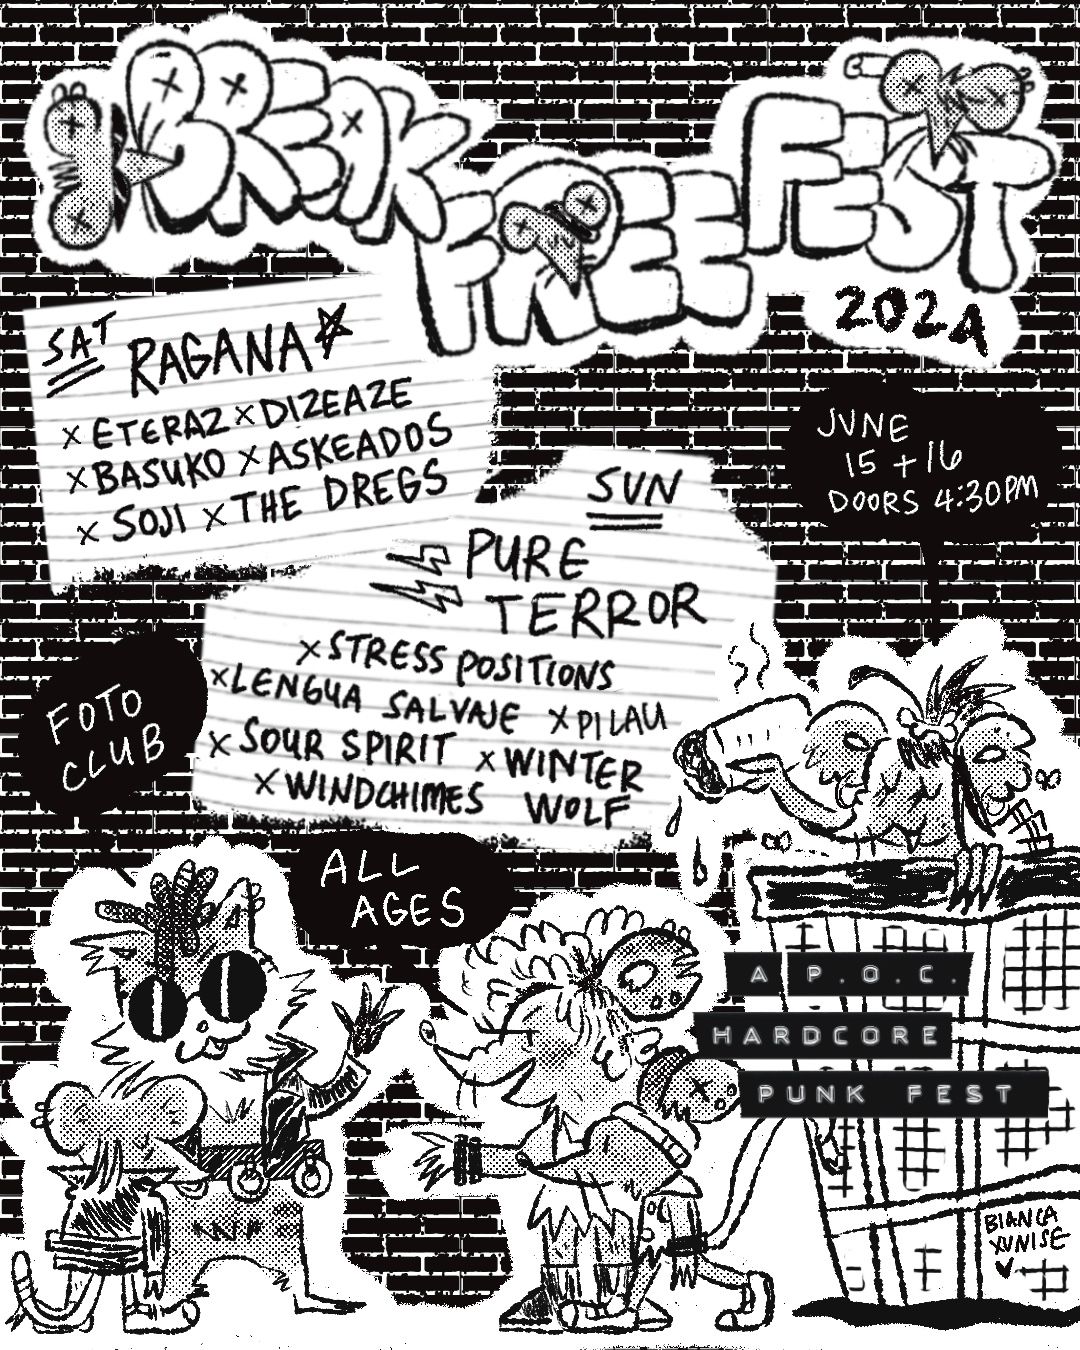 Break Free Fest 2024